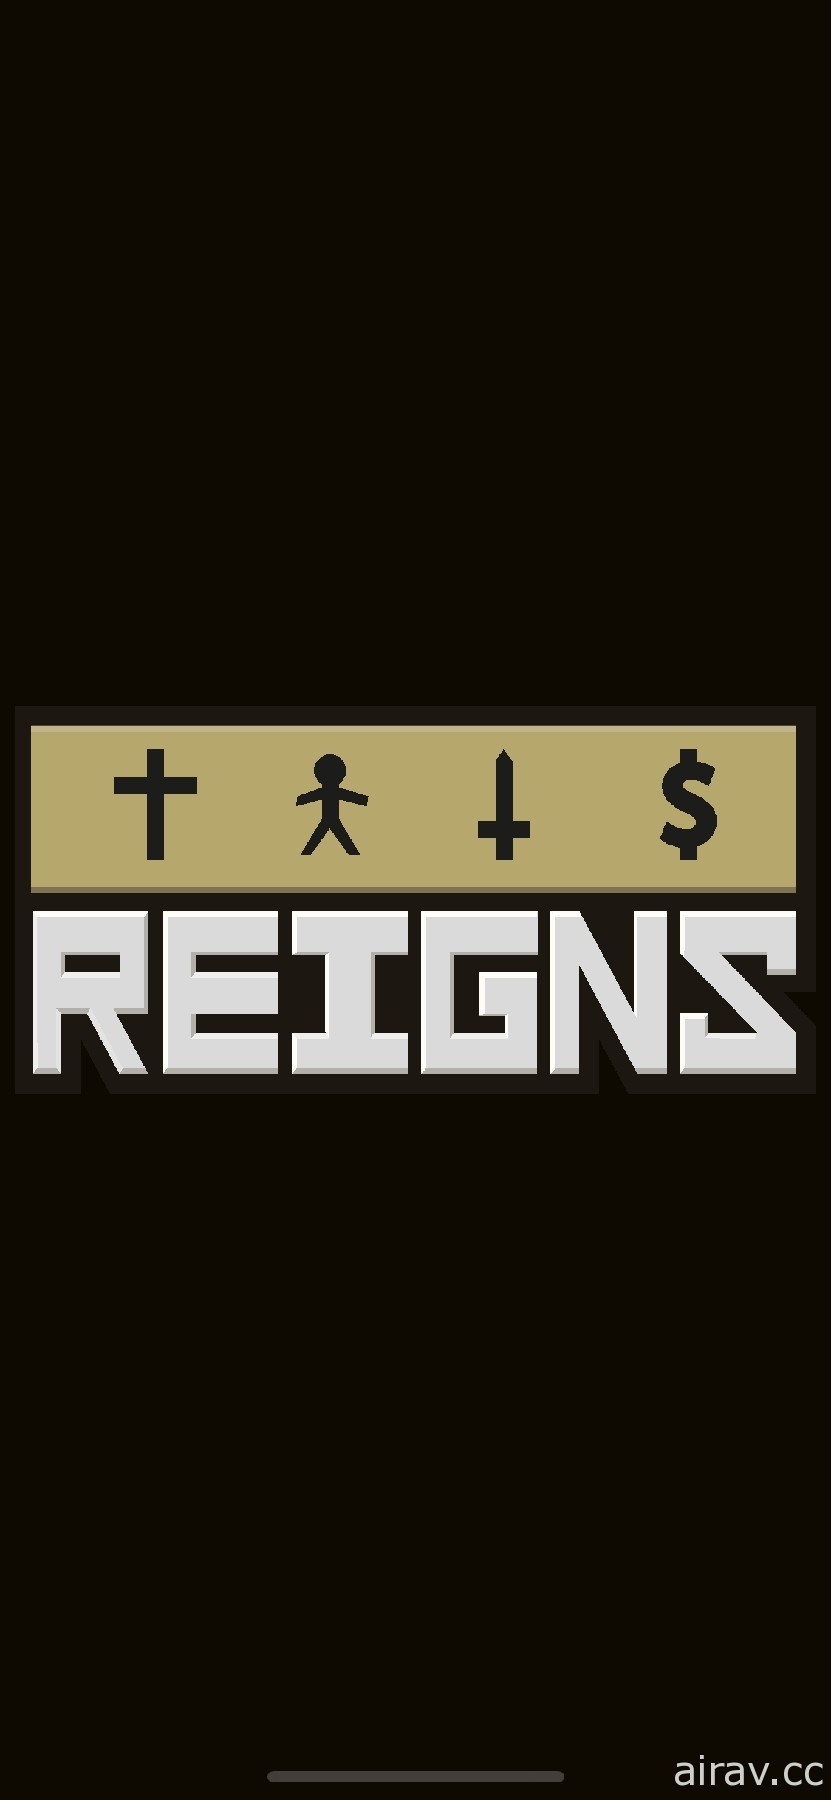 【试玩】《Reigns+》扮演刚登基的国王 拨动手指、左挥右划来下达决策统御国家